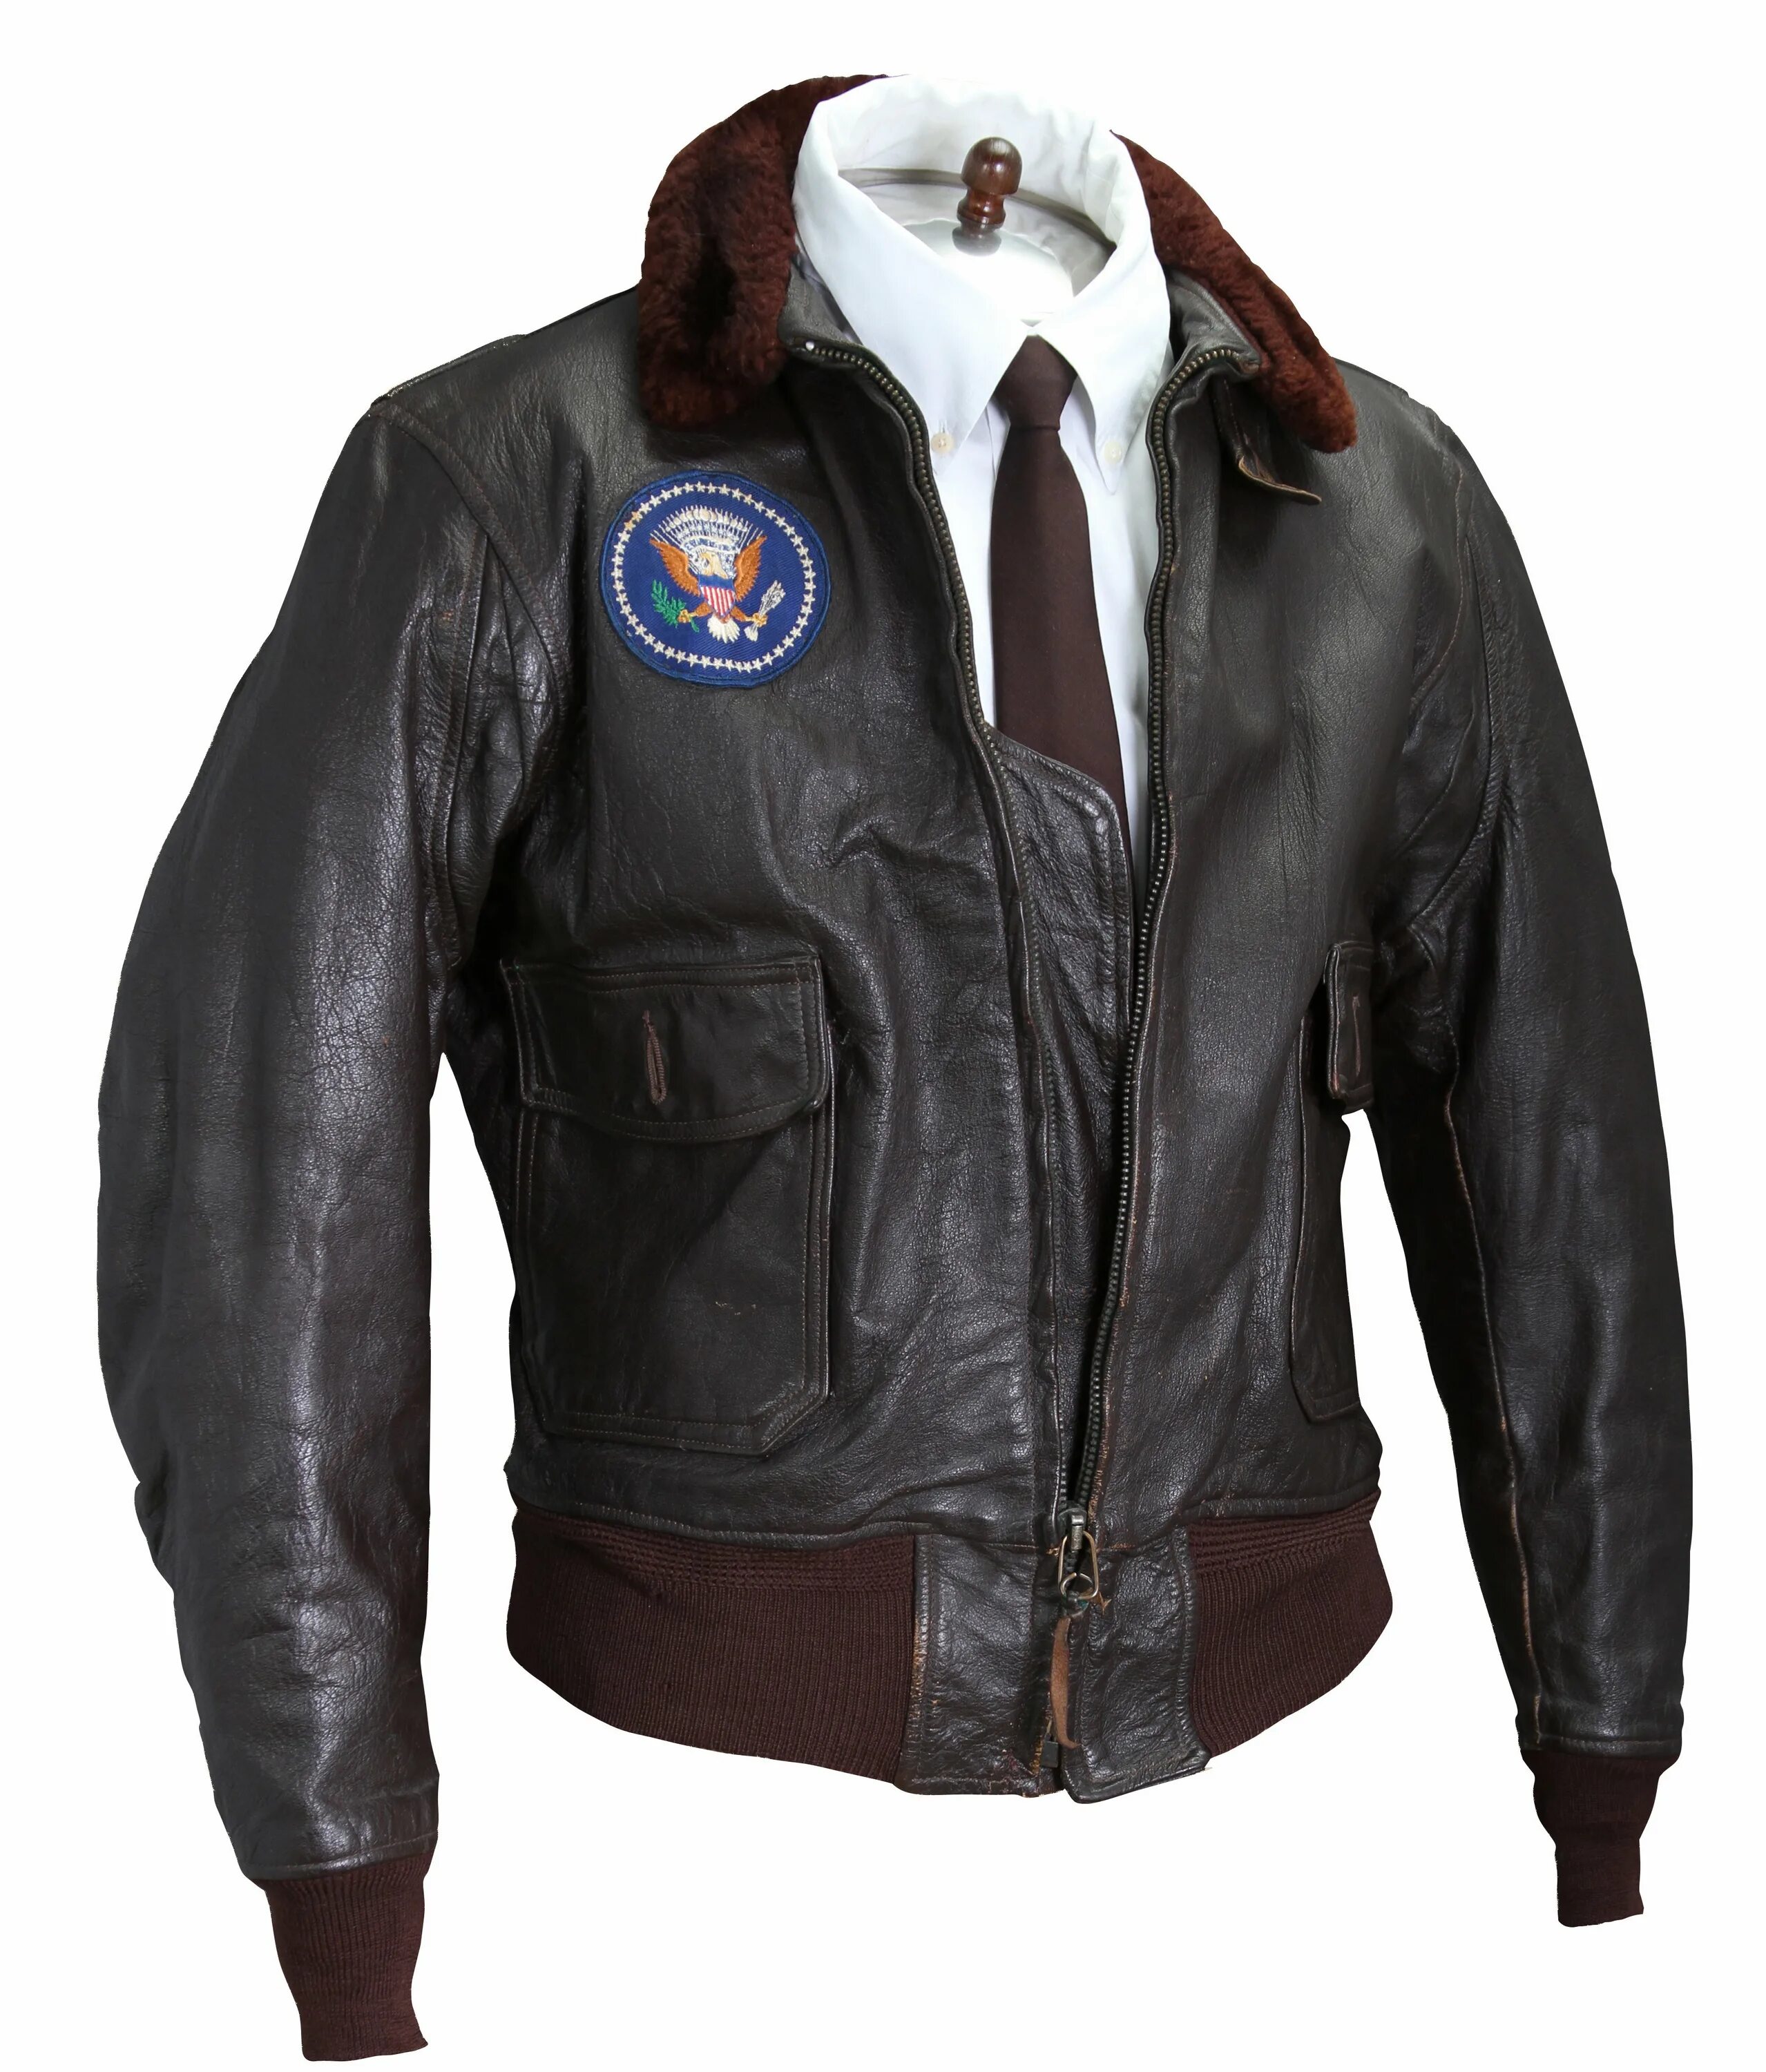 Кожаная куртка пилот бомбер John Douglas. Летная куртка John Kennedy. Куртка пилот в 90-х. Куртка пилот кожа Air Force Denver f 560. Leather air